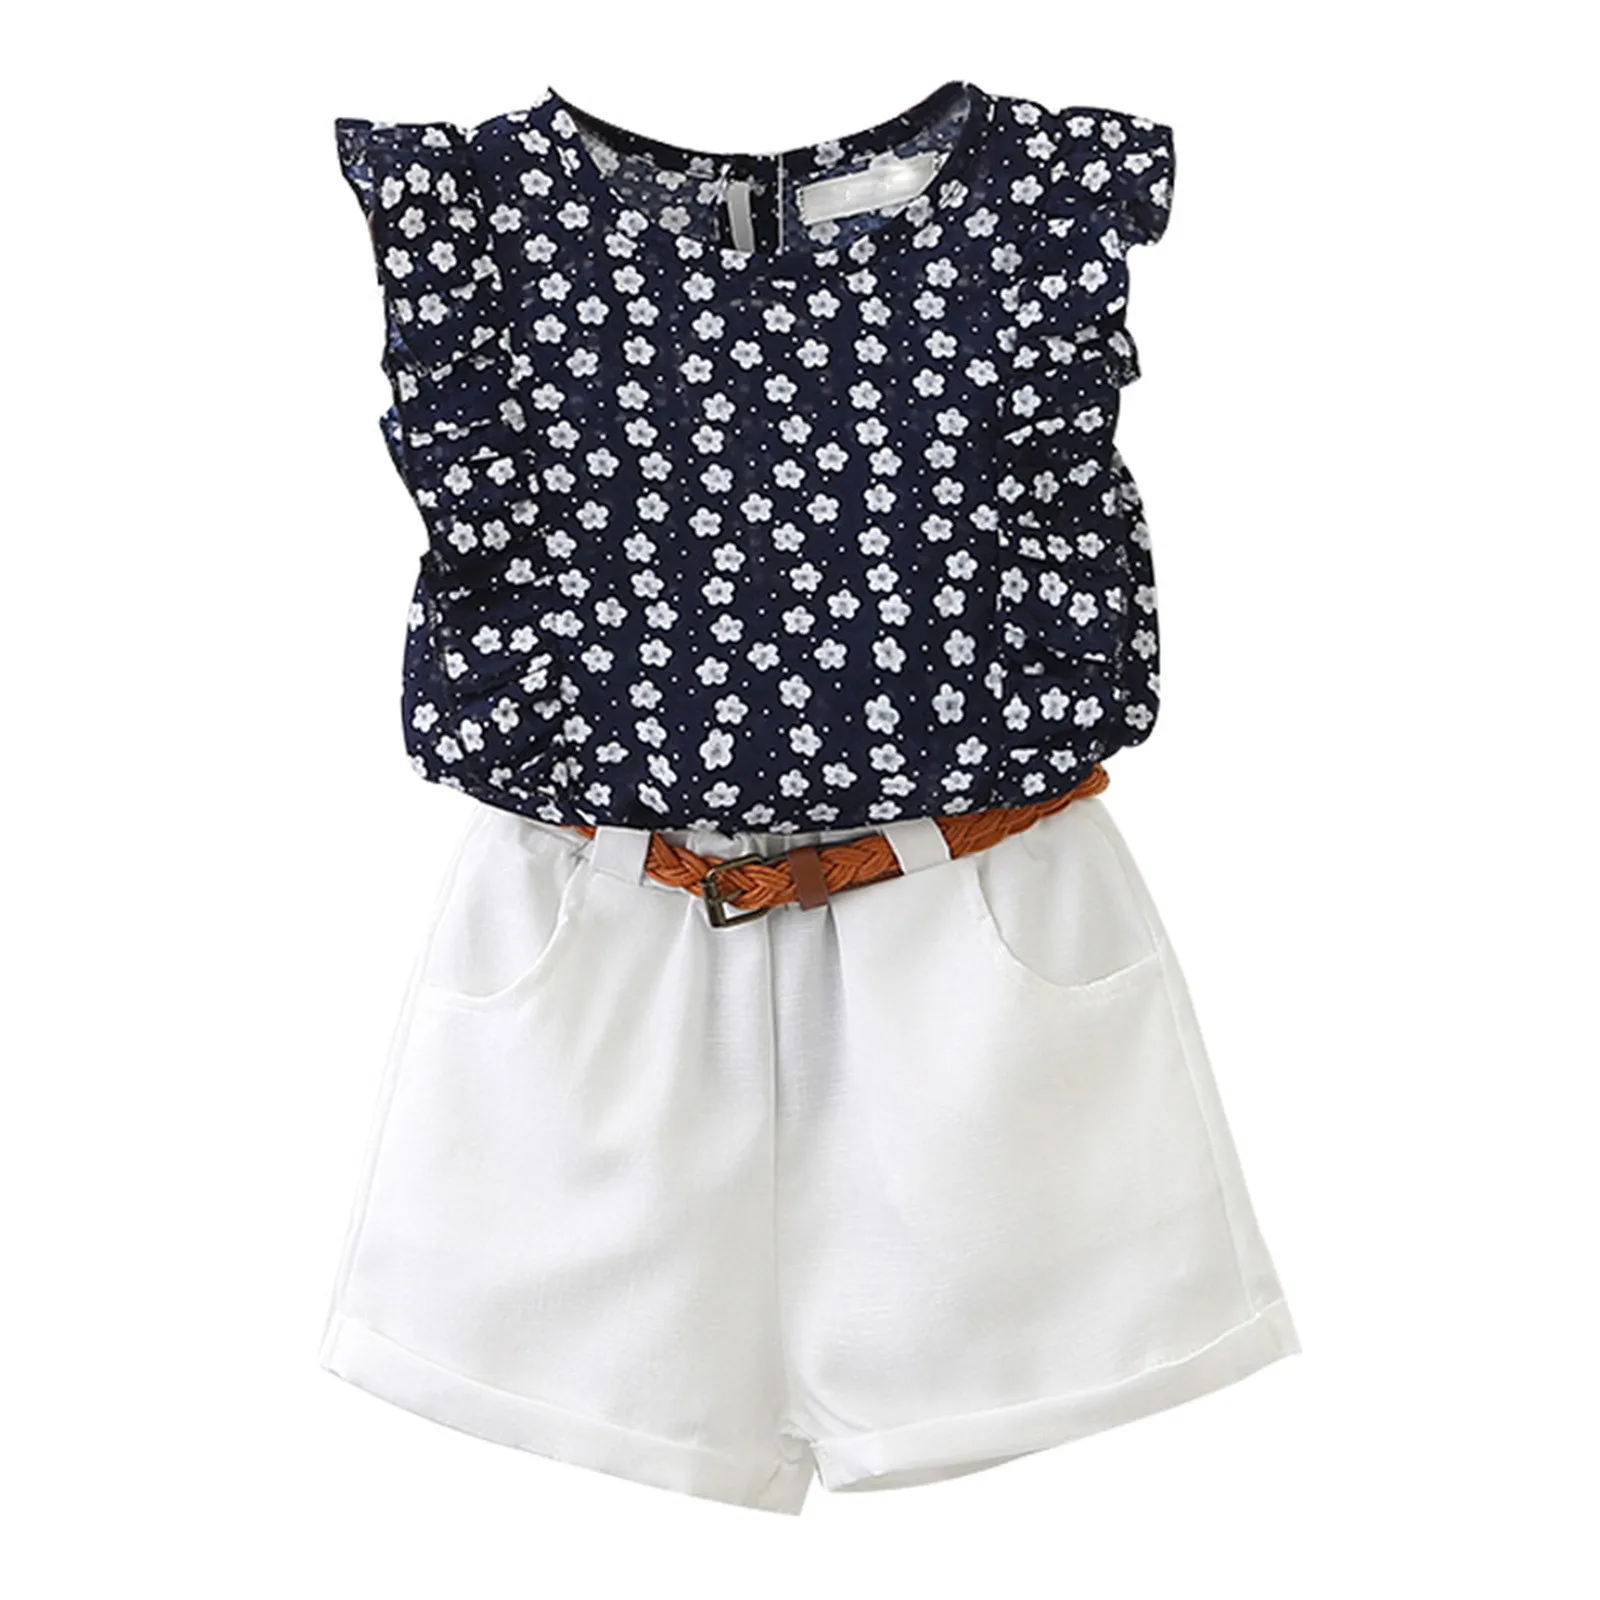 Cool Summer Breeze Toddler Girls Sleeveless Blouse, Shorts and Belt